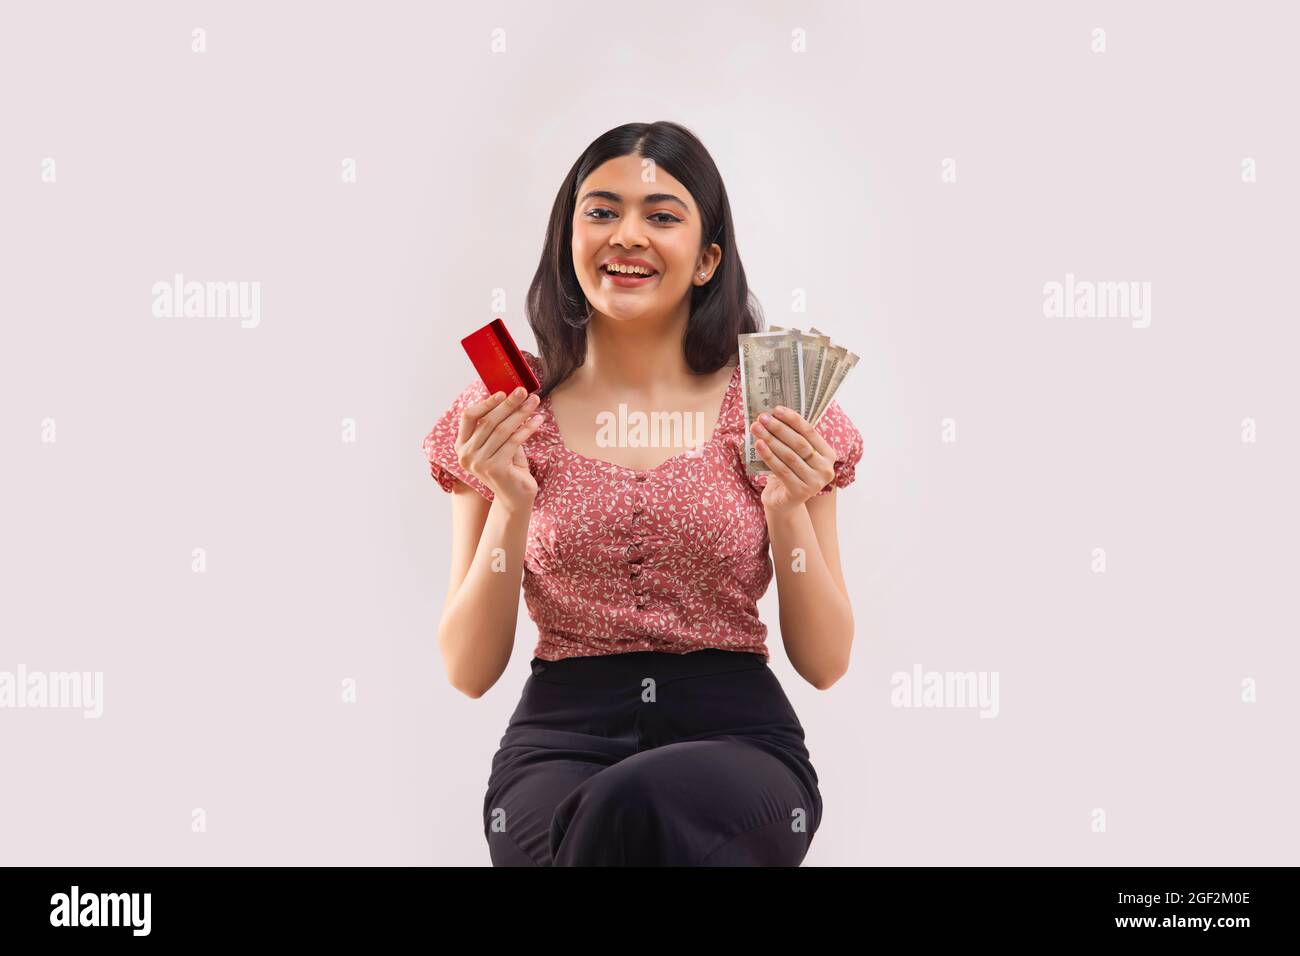 Porträt einer jungen Frau, die in jeder Hand mit Kreditkarte und Bargeld sitzt. Stockfoto